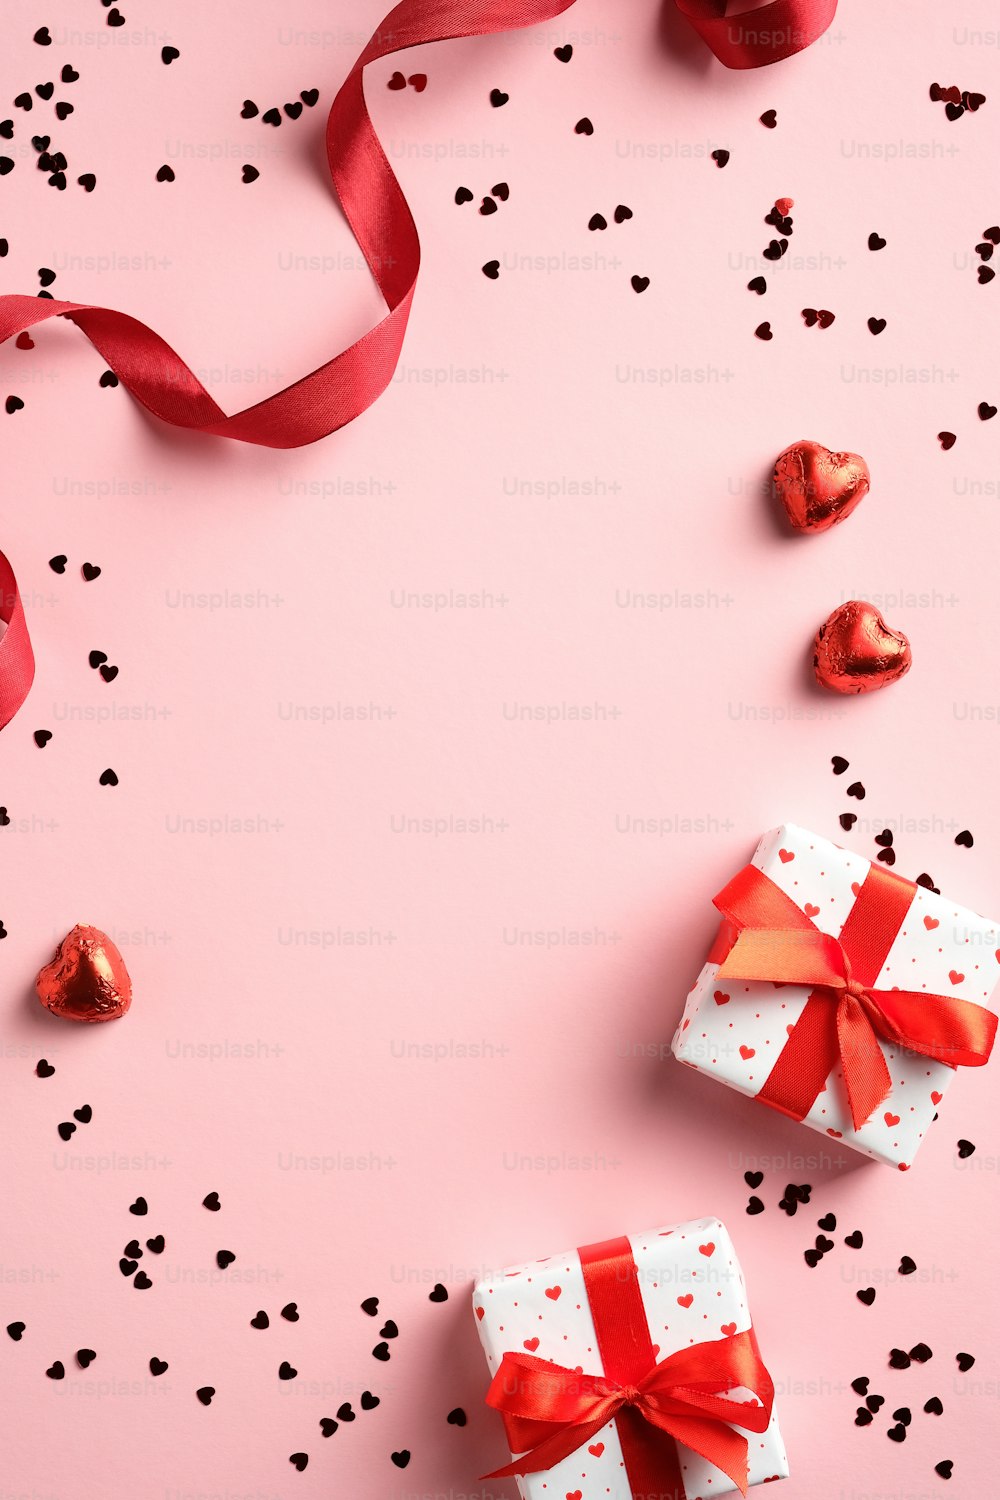 Happy Valentine's Day Konzept. Vertikales Banner mit Geschenkboxen, rotes Band, Konfetti auf rosa Tisch. Draufsicht, flach gelegt. Valentinstag Geschenkgutschein Design, Grußkarte, Story Design auf Social Media